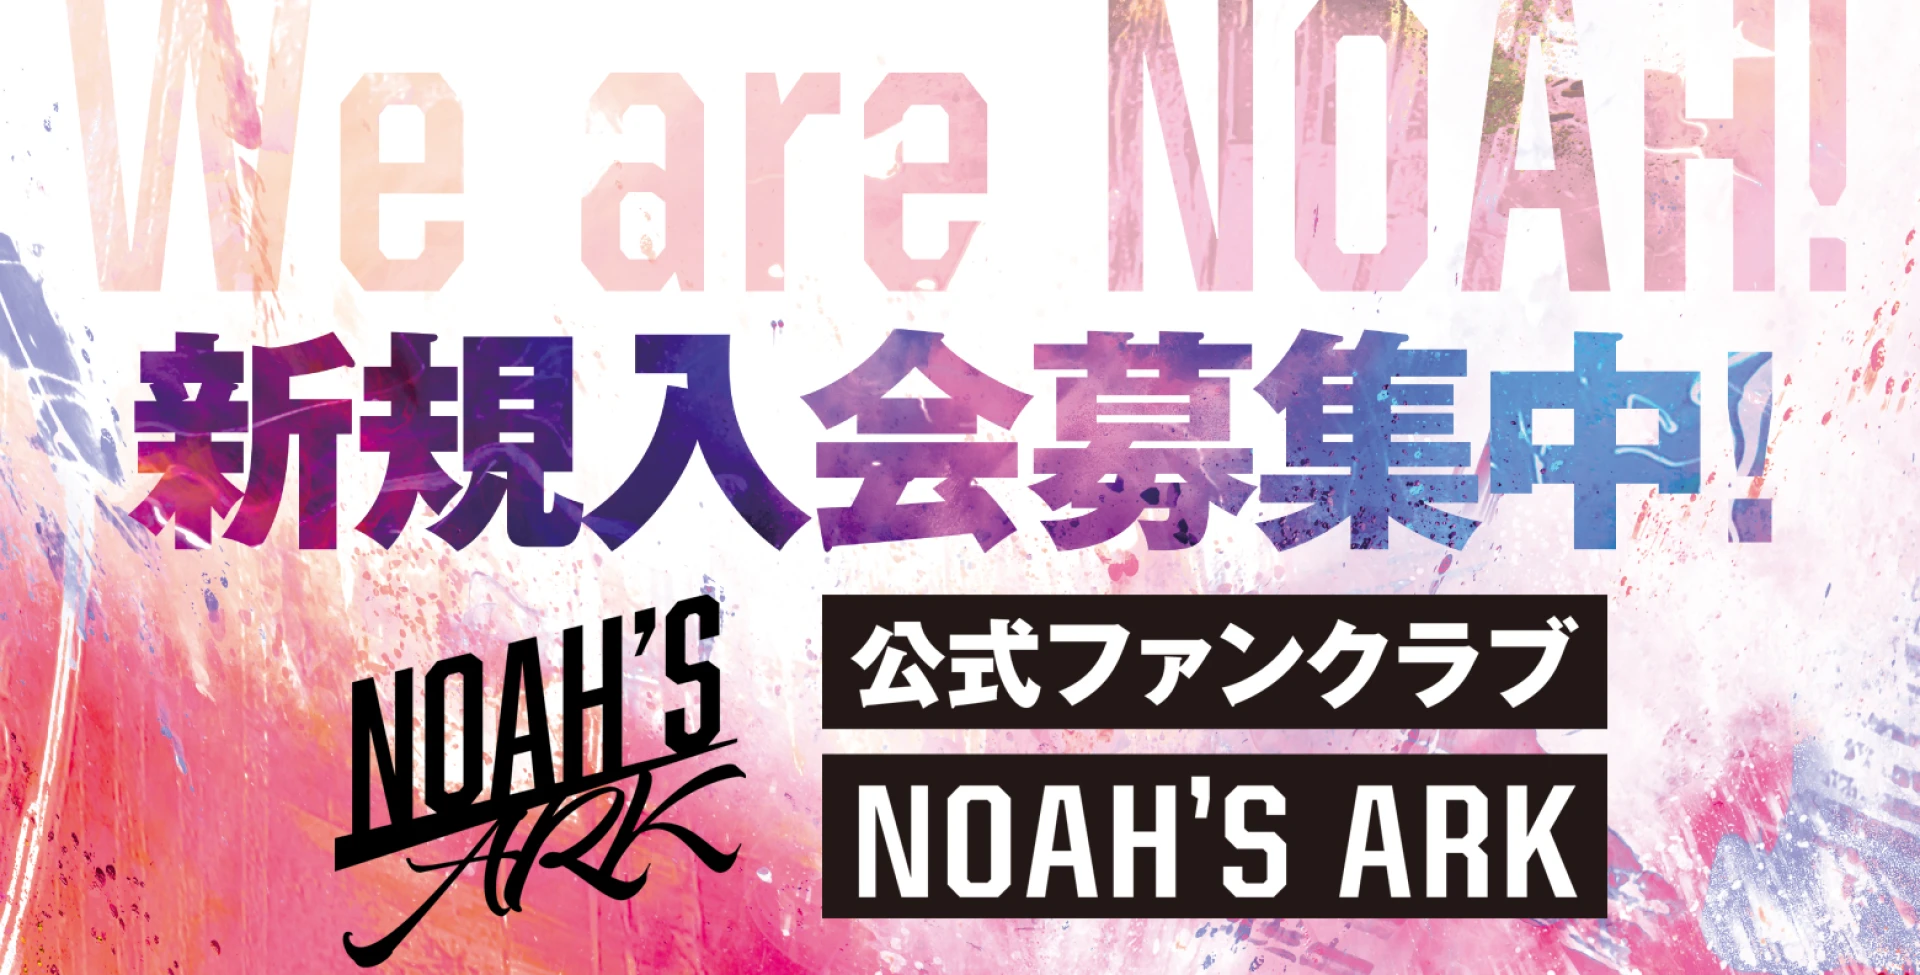 オフィシャルファンクラブ「NOAH's ARK」会員募集中